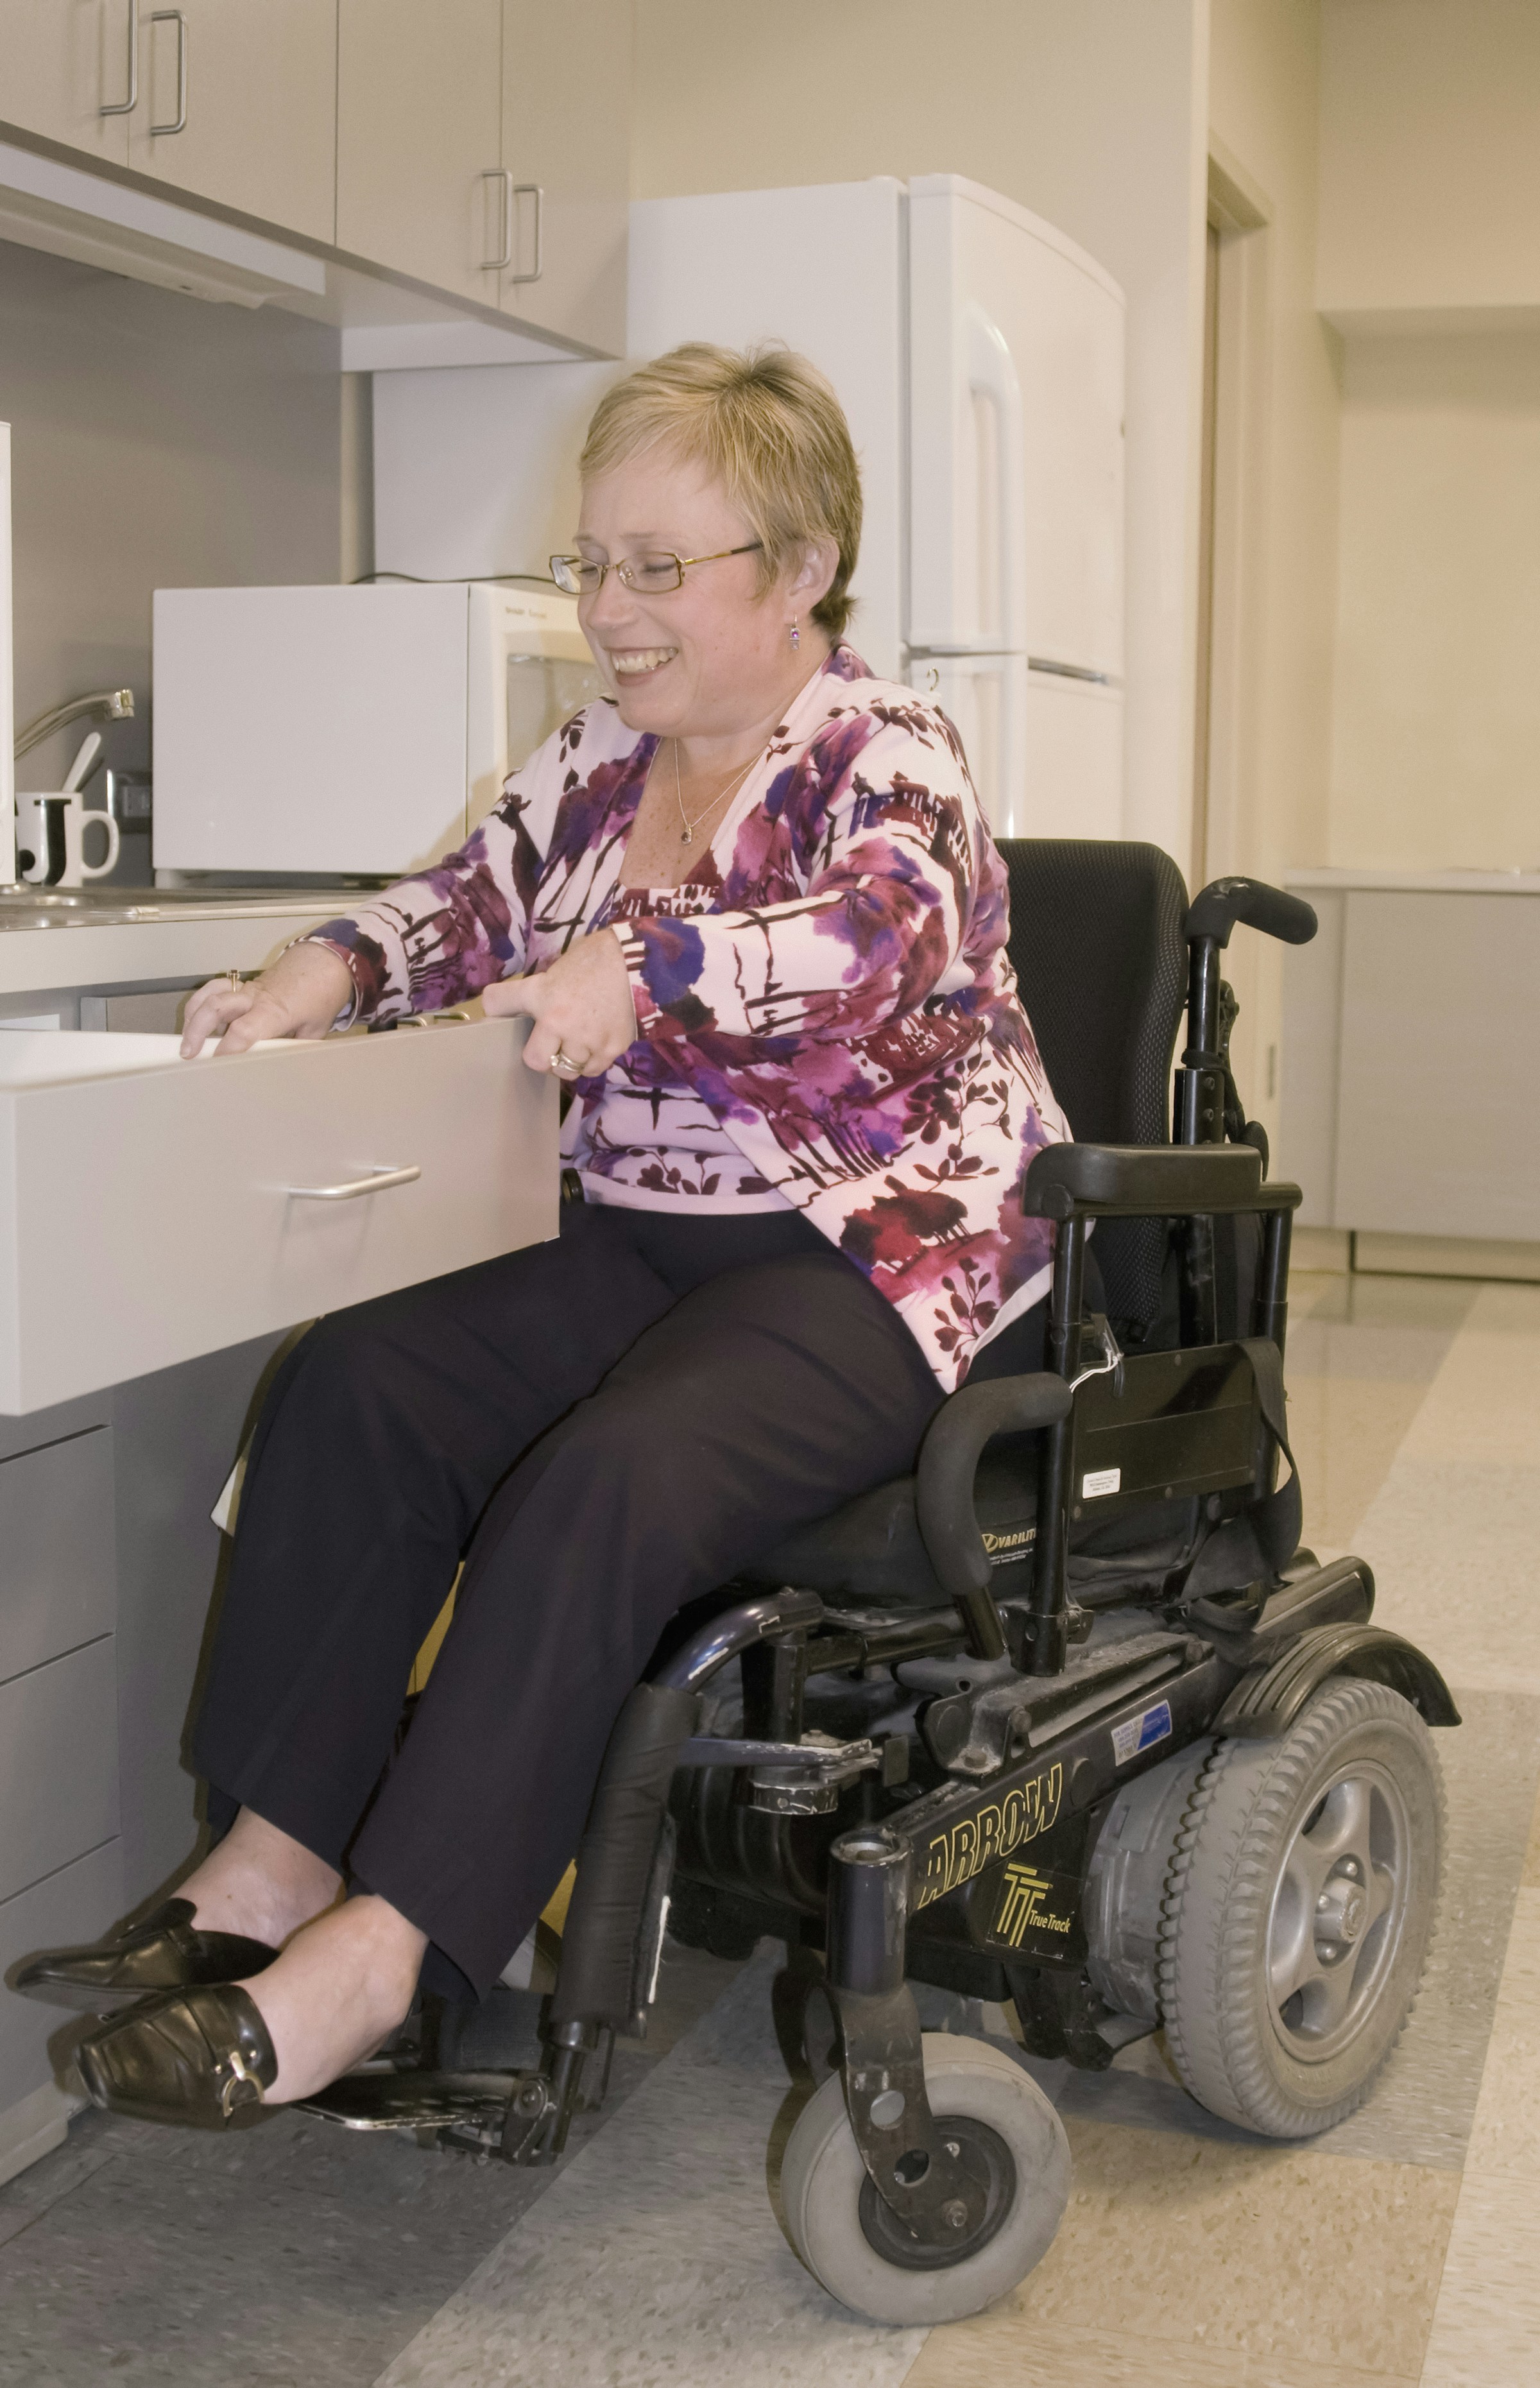 Una mujer sonriente en silla de ruedas | Fuente: Unsplash